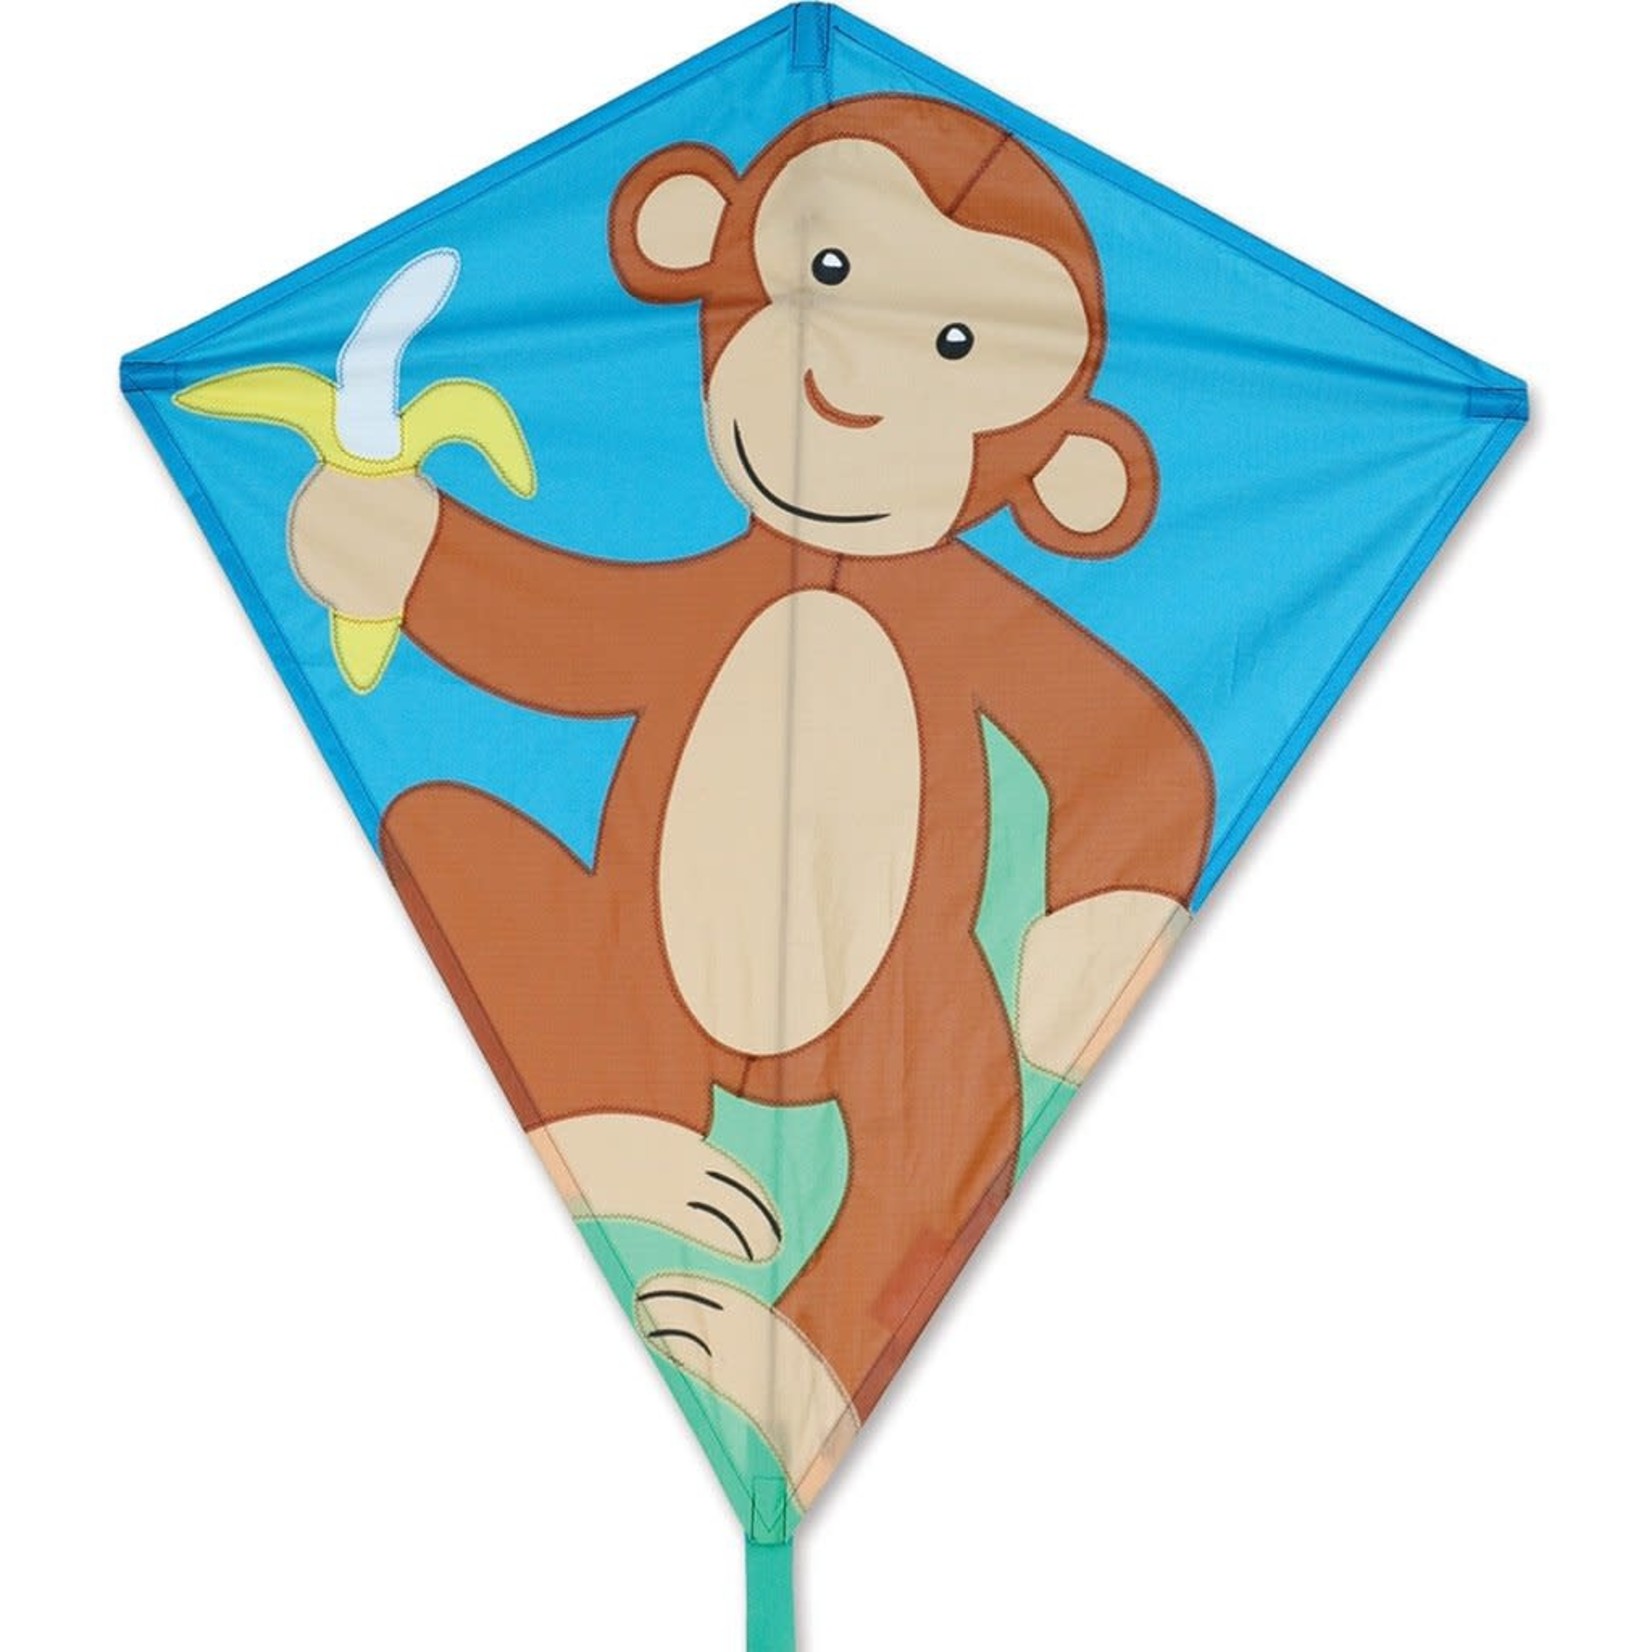 Premier Kites PMR15316 Premier Kites 30 in. Diamond Kite - Monkey